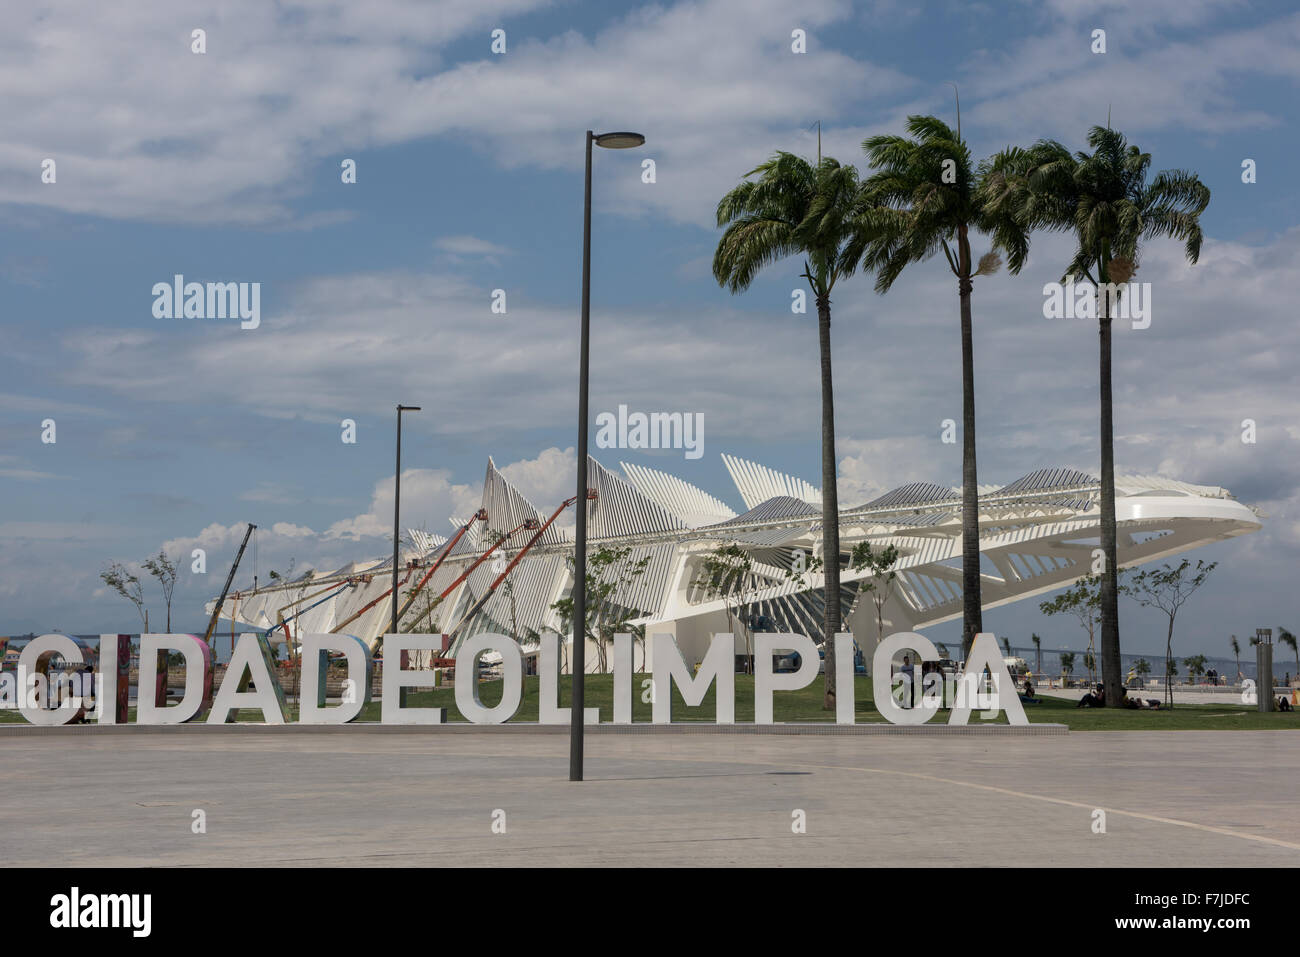 Vista de la Praça Mauá con la #CIDADEOLIMPICA signo prominente en frente del Museu do amanhã (Museo del Mañana). Juegos Olímpicos, Rio de Janeiro, Brasil, 2016. Foto de stock